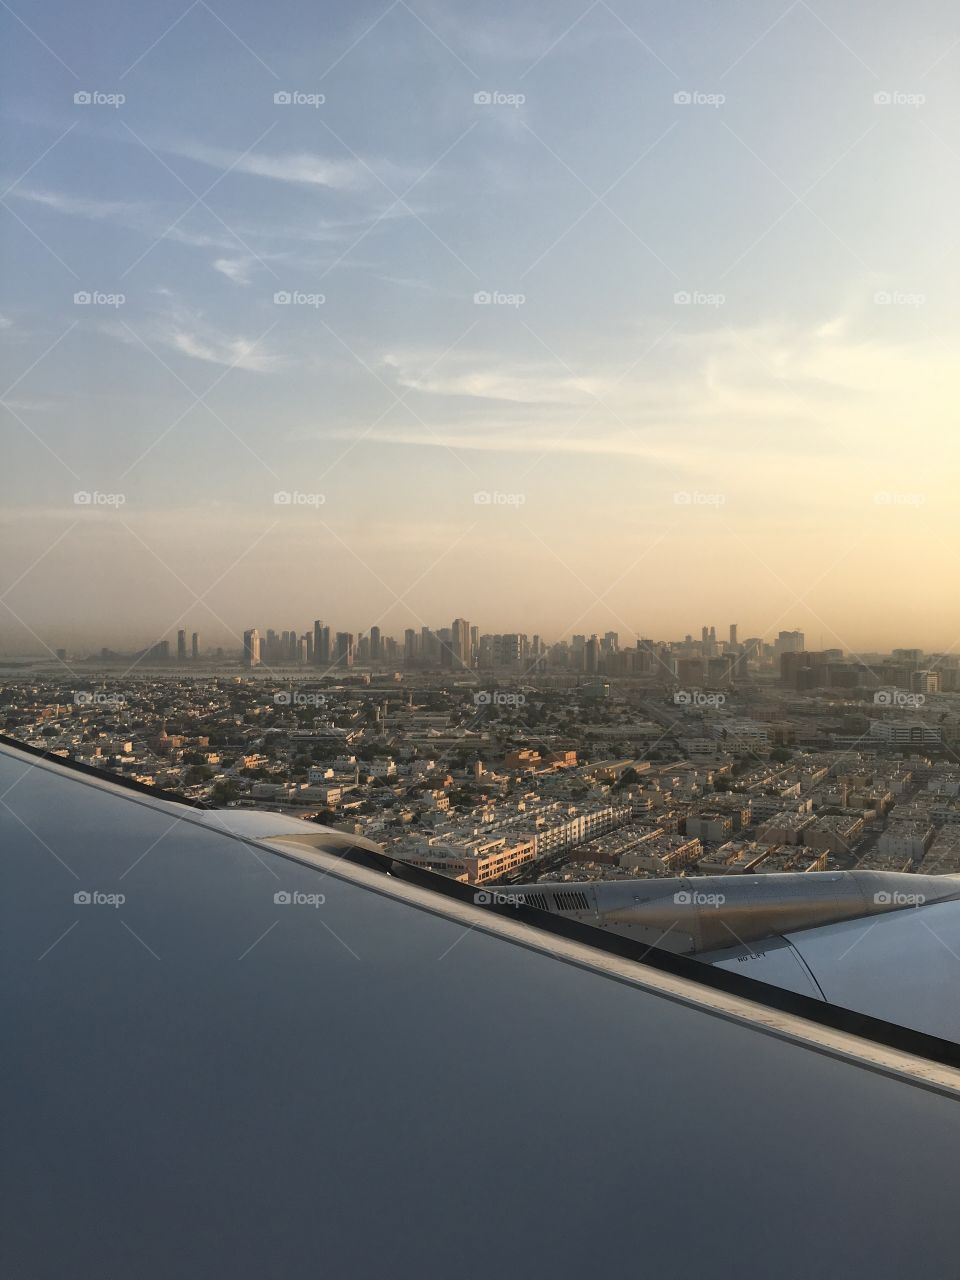 View from flight, Sharjah